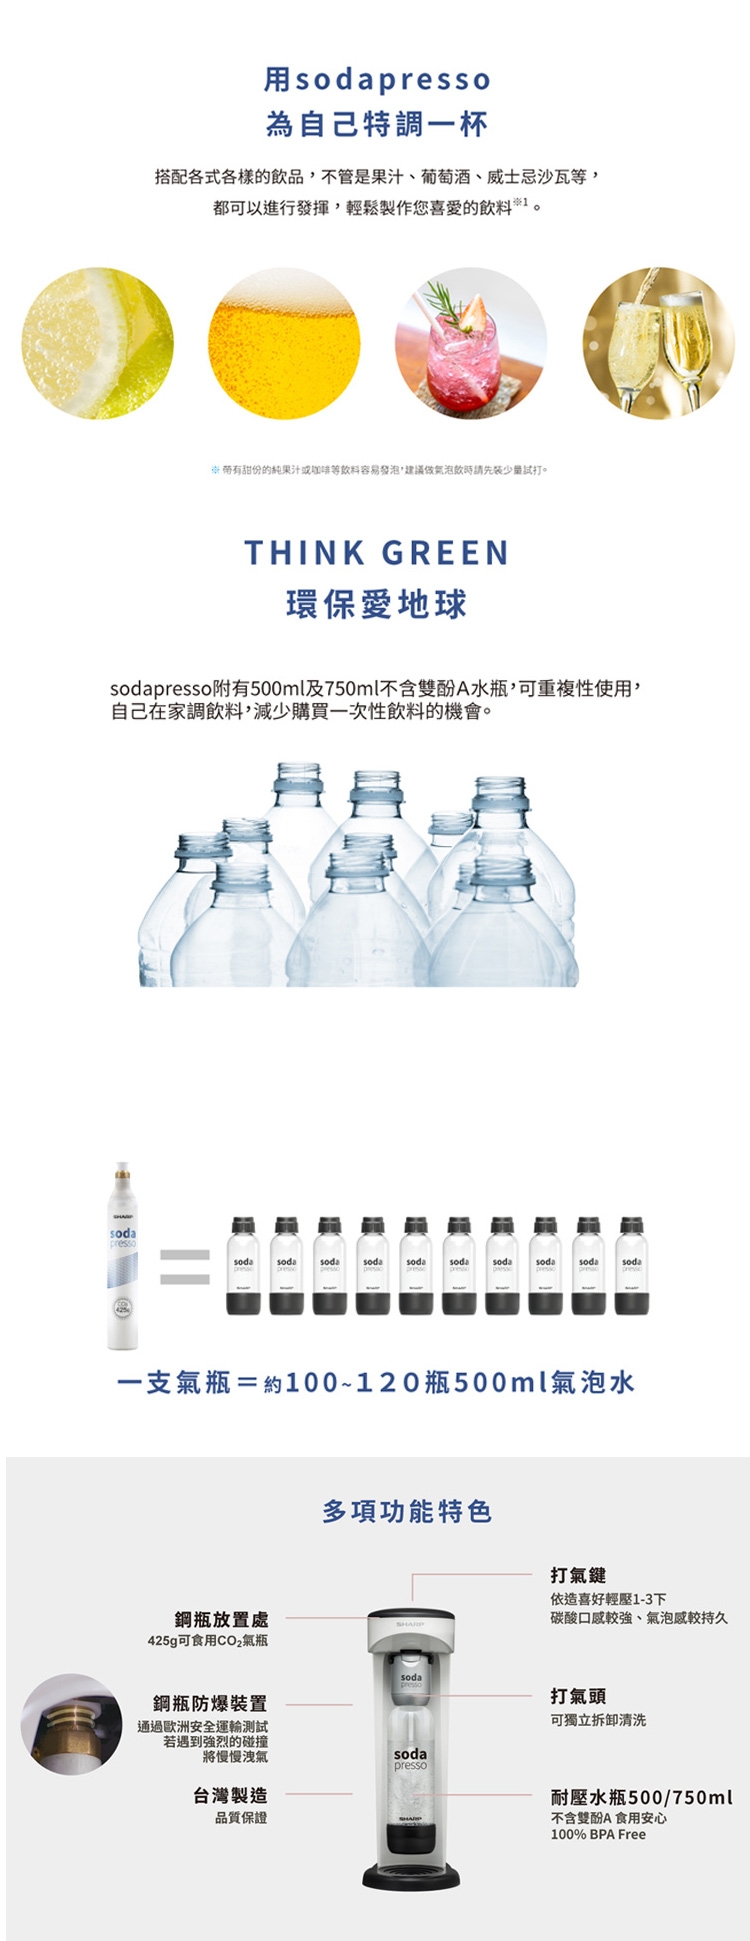 SHARP夏普 Soda Presso氣泡水機 CO-SM1T-W洋蔥白 / CO-SM1T-R (2水瓶+1氣瓶)